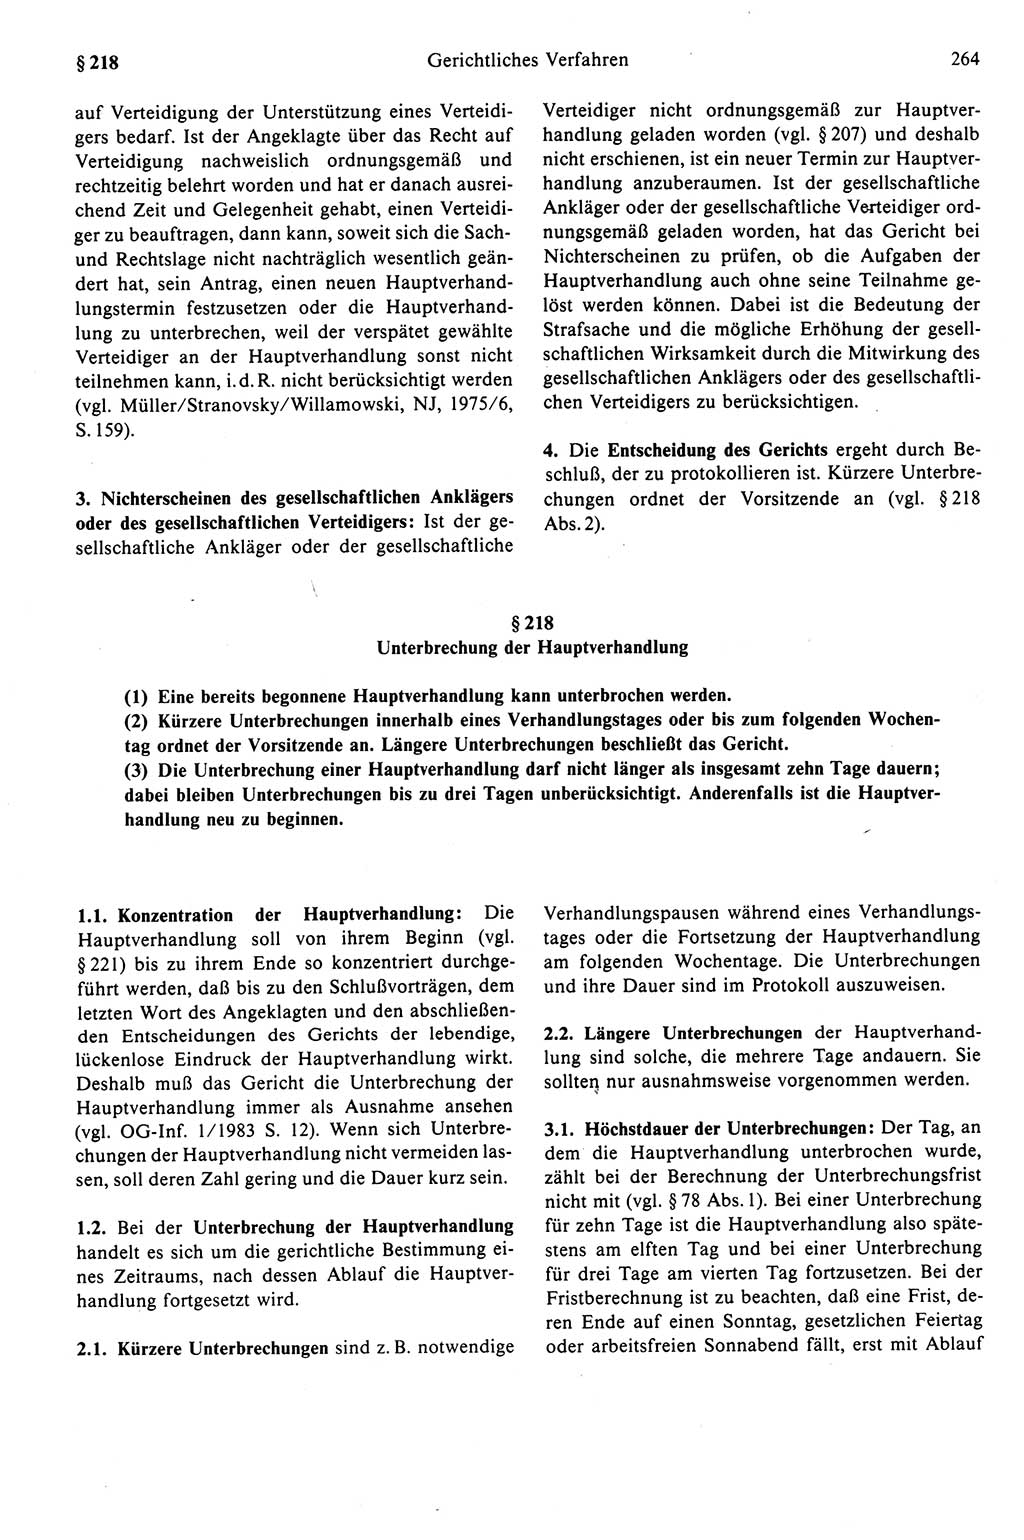 Strafprozeßrecht der DDR (Deutsche Demokratische Republik), Kommentar zur Strafprozeßordnung (StPO) 1989, Seite 264 (Strafprozeßr. DDR Komm. StPO 1989, S. 264)